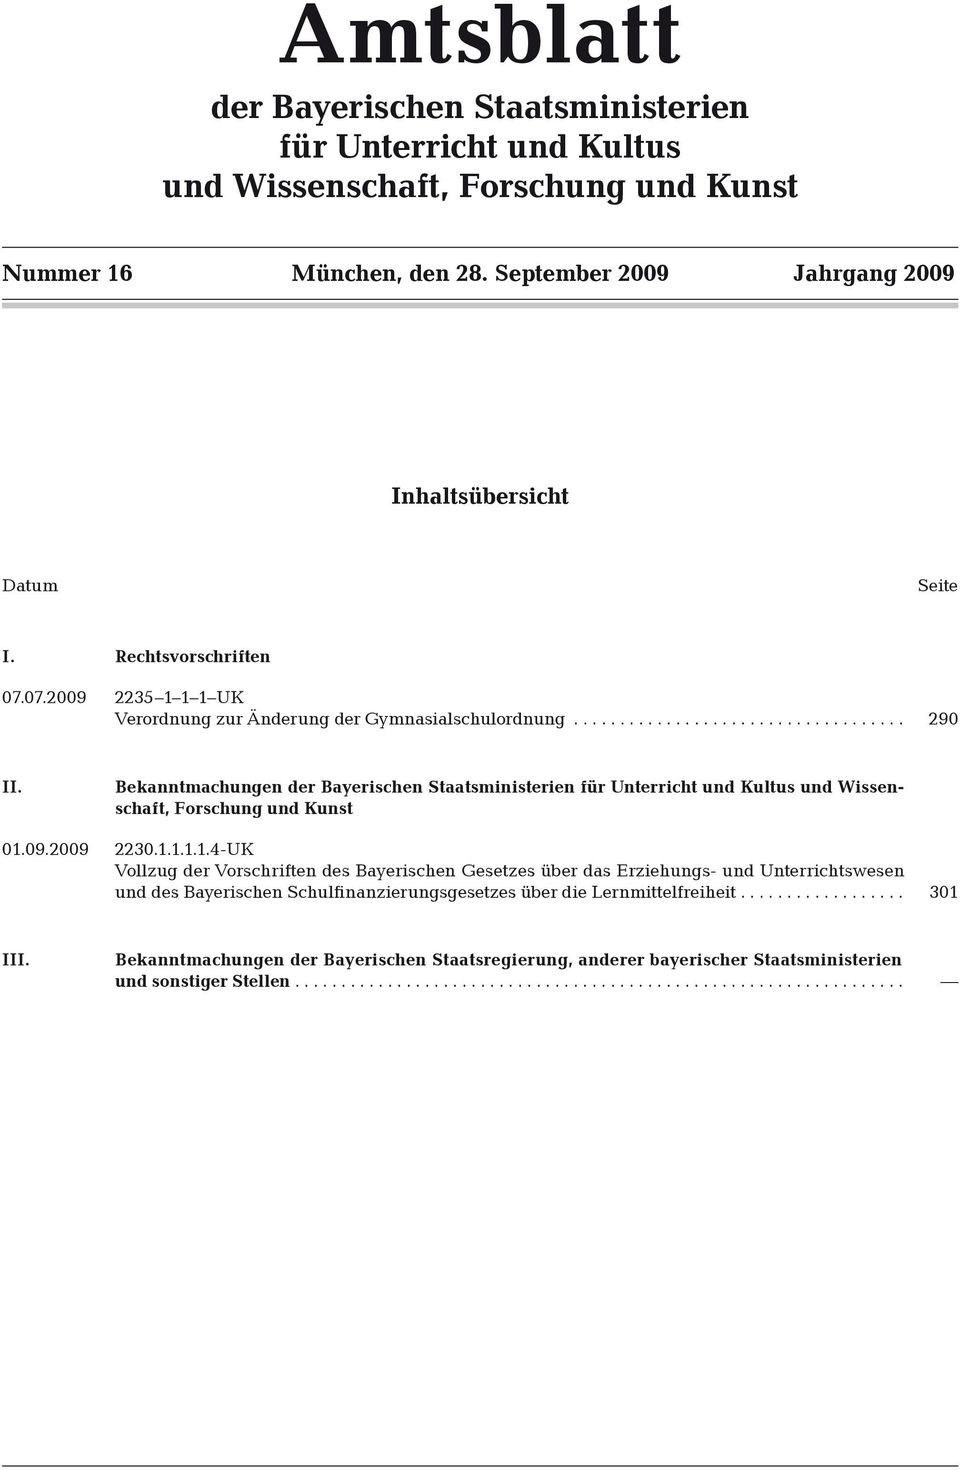 Bekanntmachungen der Bayerischen Staatsministerien für Unterricht und Kultus und Wissenschaft, Forschung und Kunst 01.